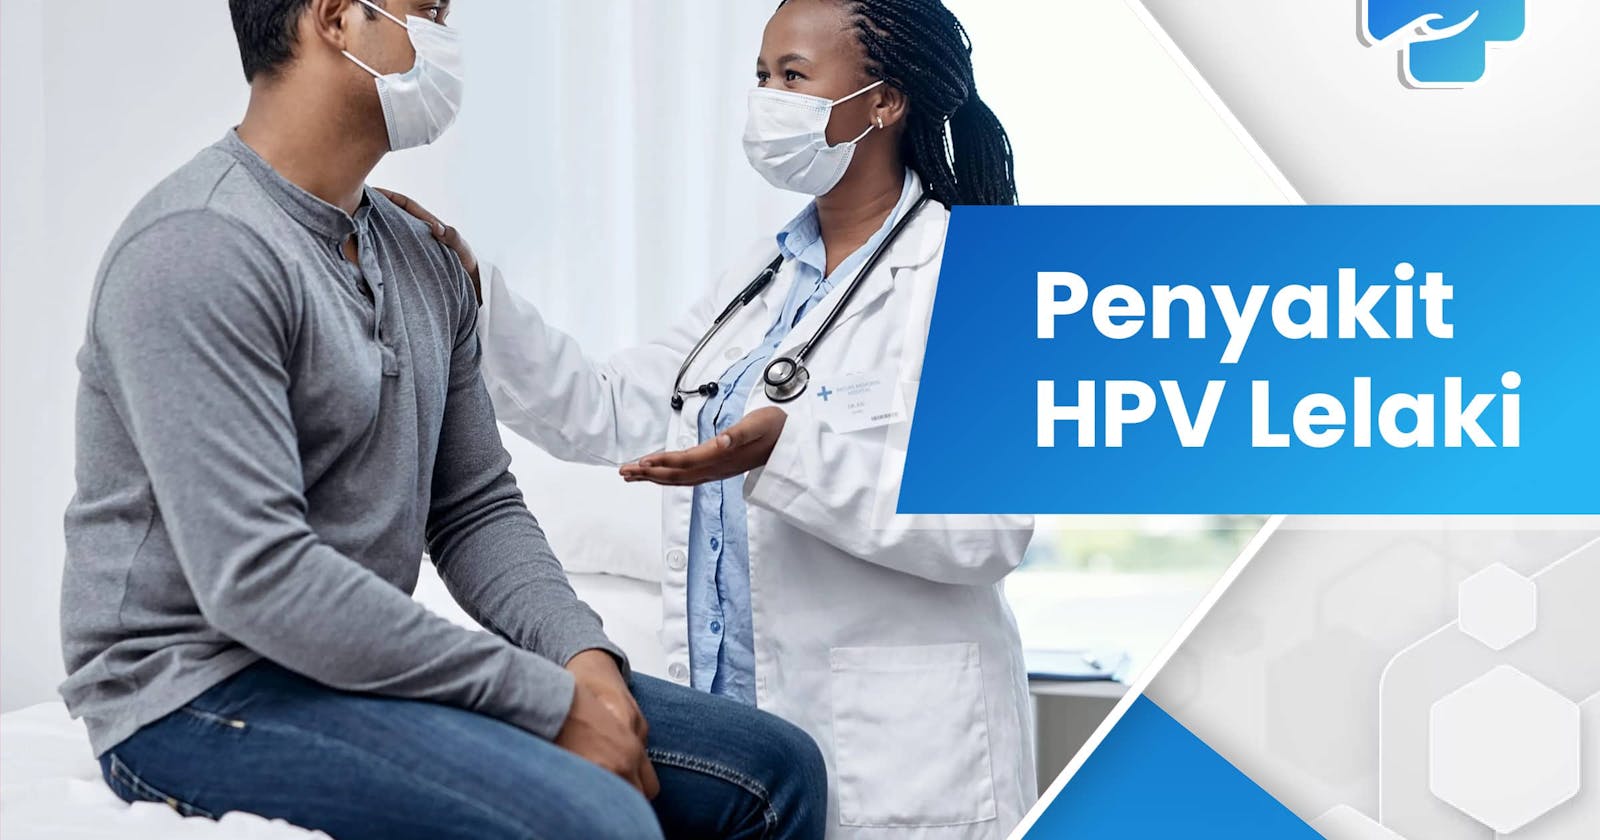 Penyakit HPV Lelaki: Perlu Dikenali dan Diatasi Cepat!